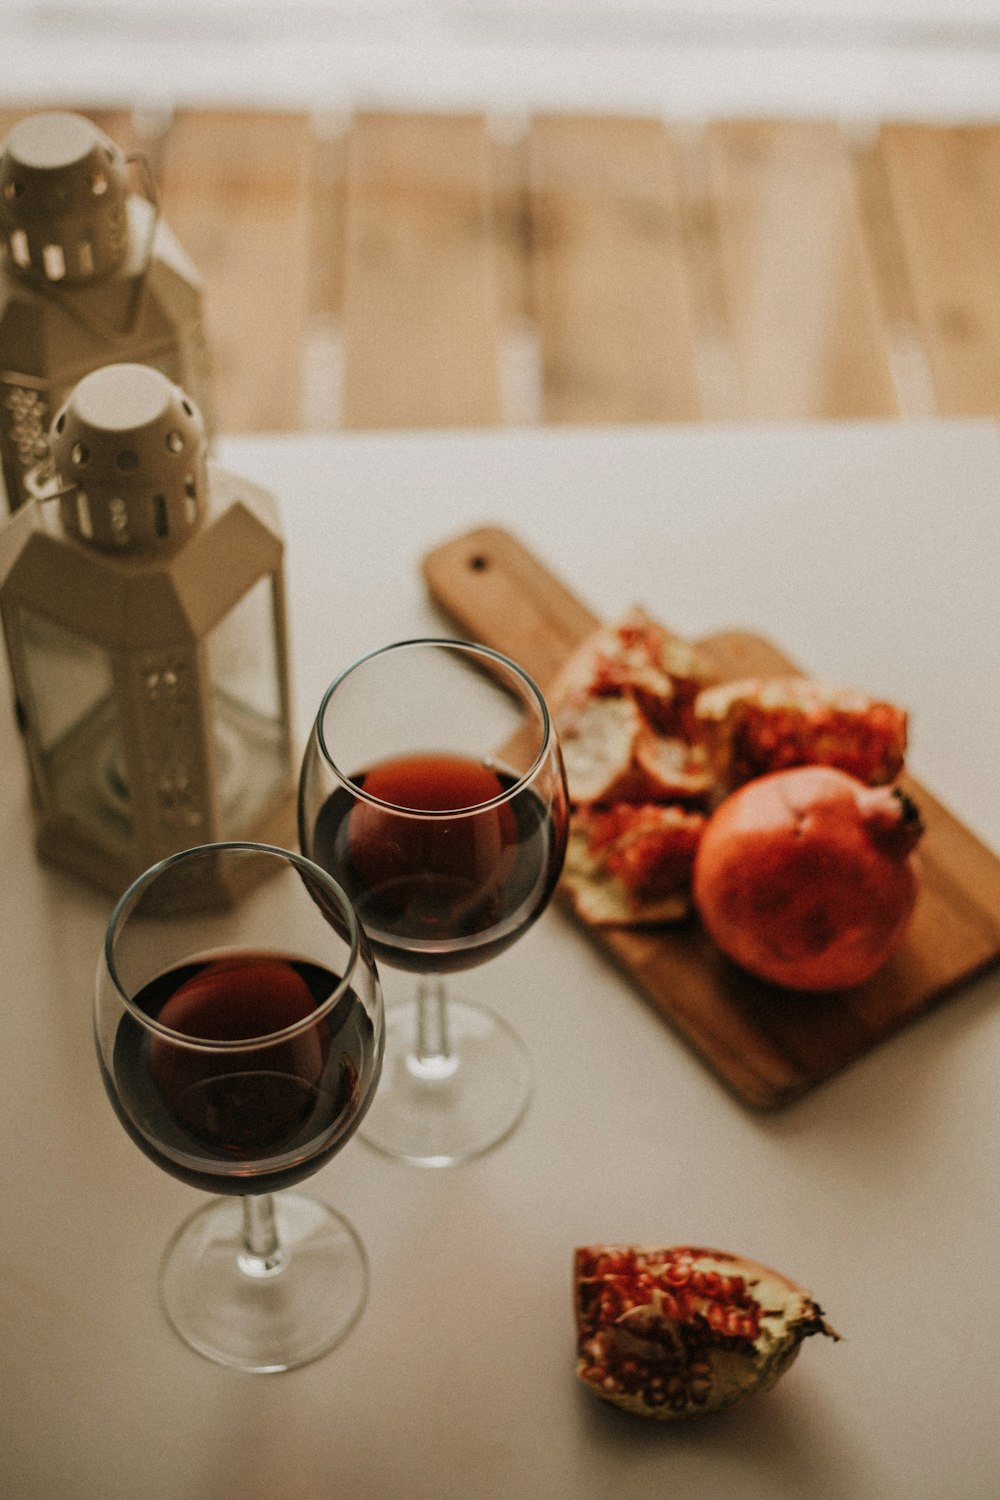 테이블 위에 앉아있는 와인 두 잔